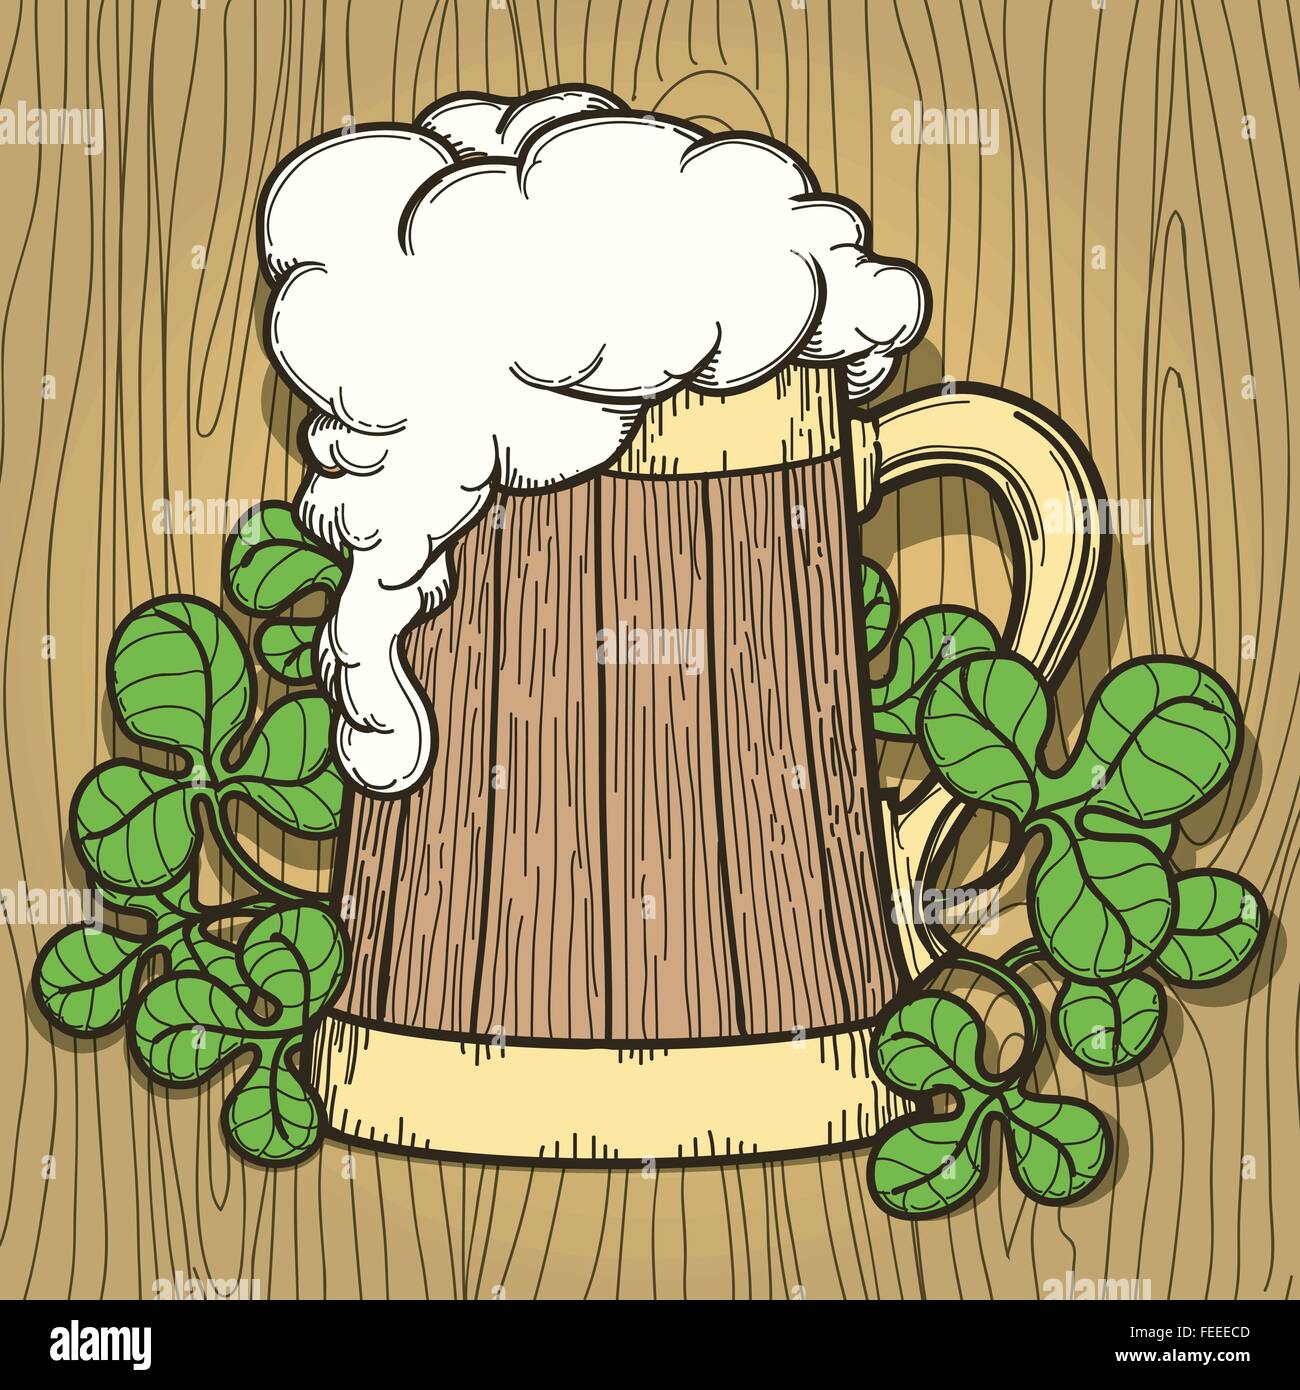 Boccale di birra piena di birra con un sacco di schiuma. Disegnata in stile retrò. Illustrazione Vettoriale